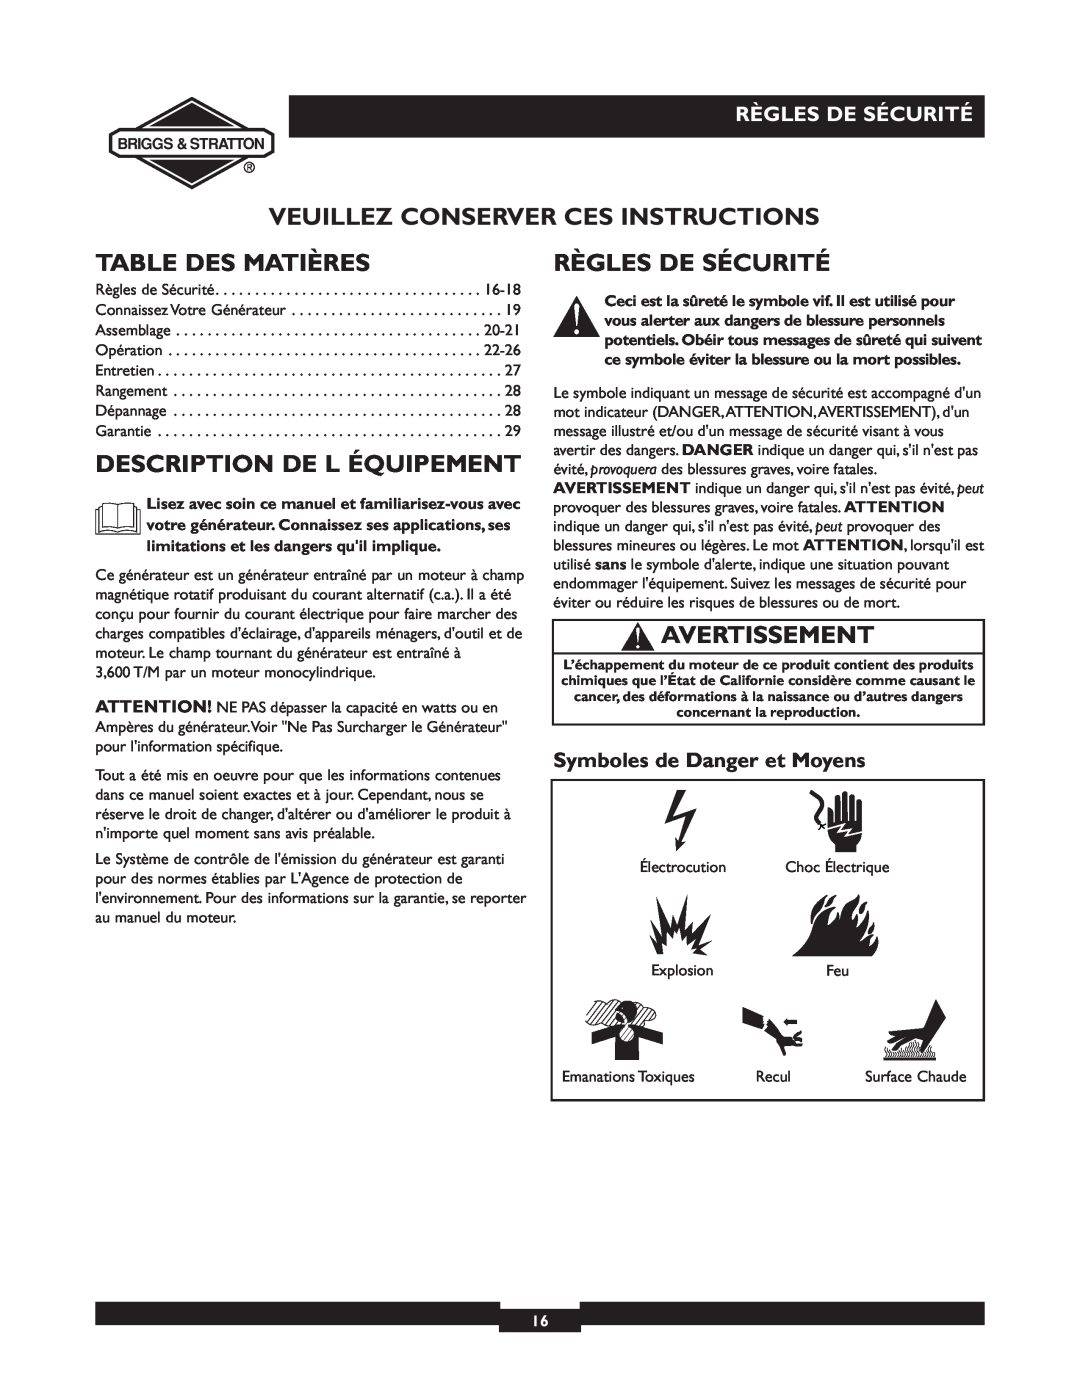 Briggs & Stratton 30238 owner manual Veuillez Conserver Ces Instructions, Table Des Matières, Description De L Équipement 